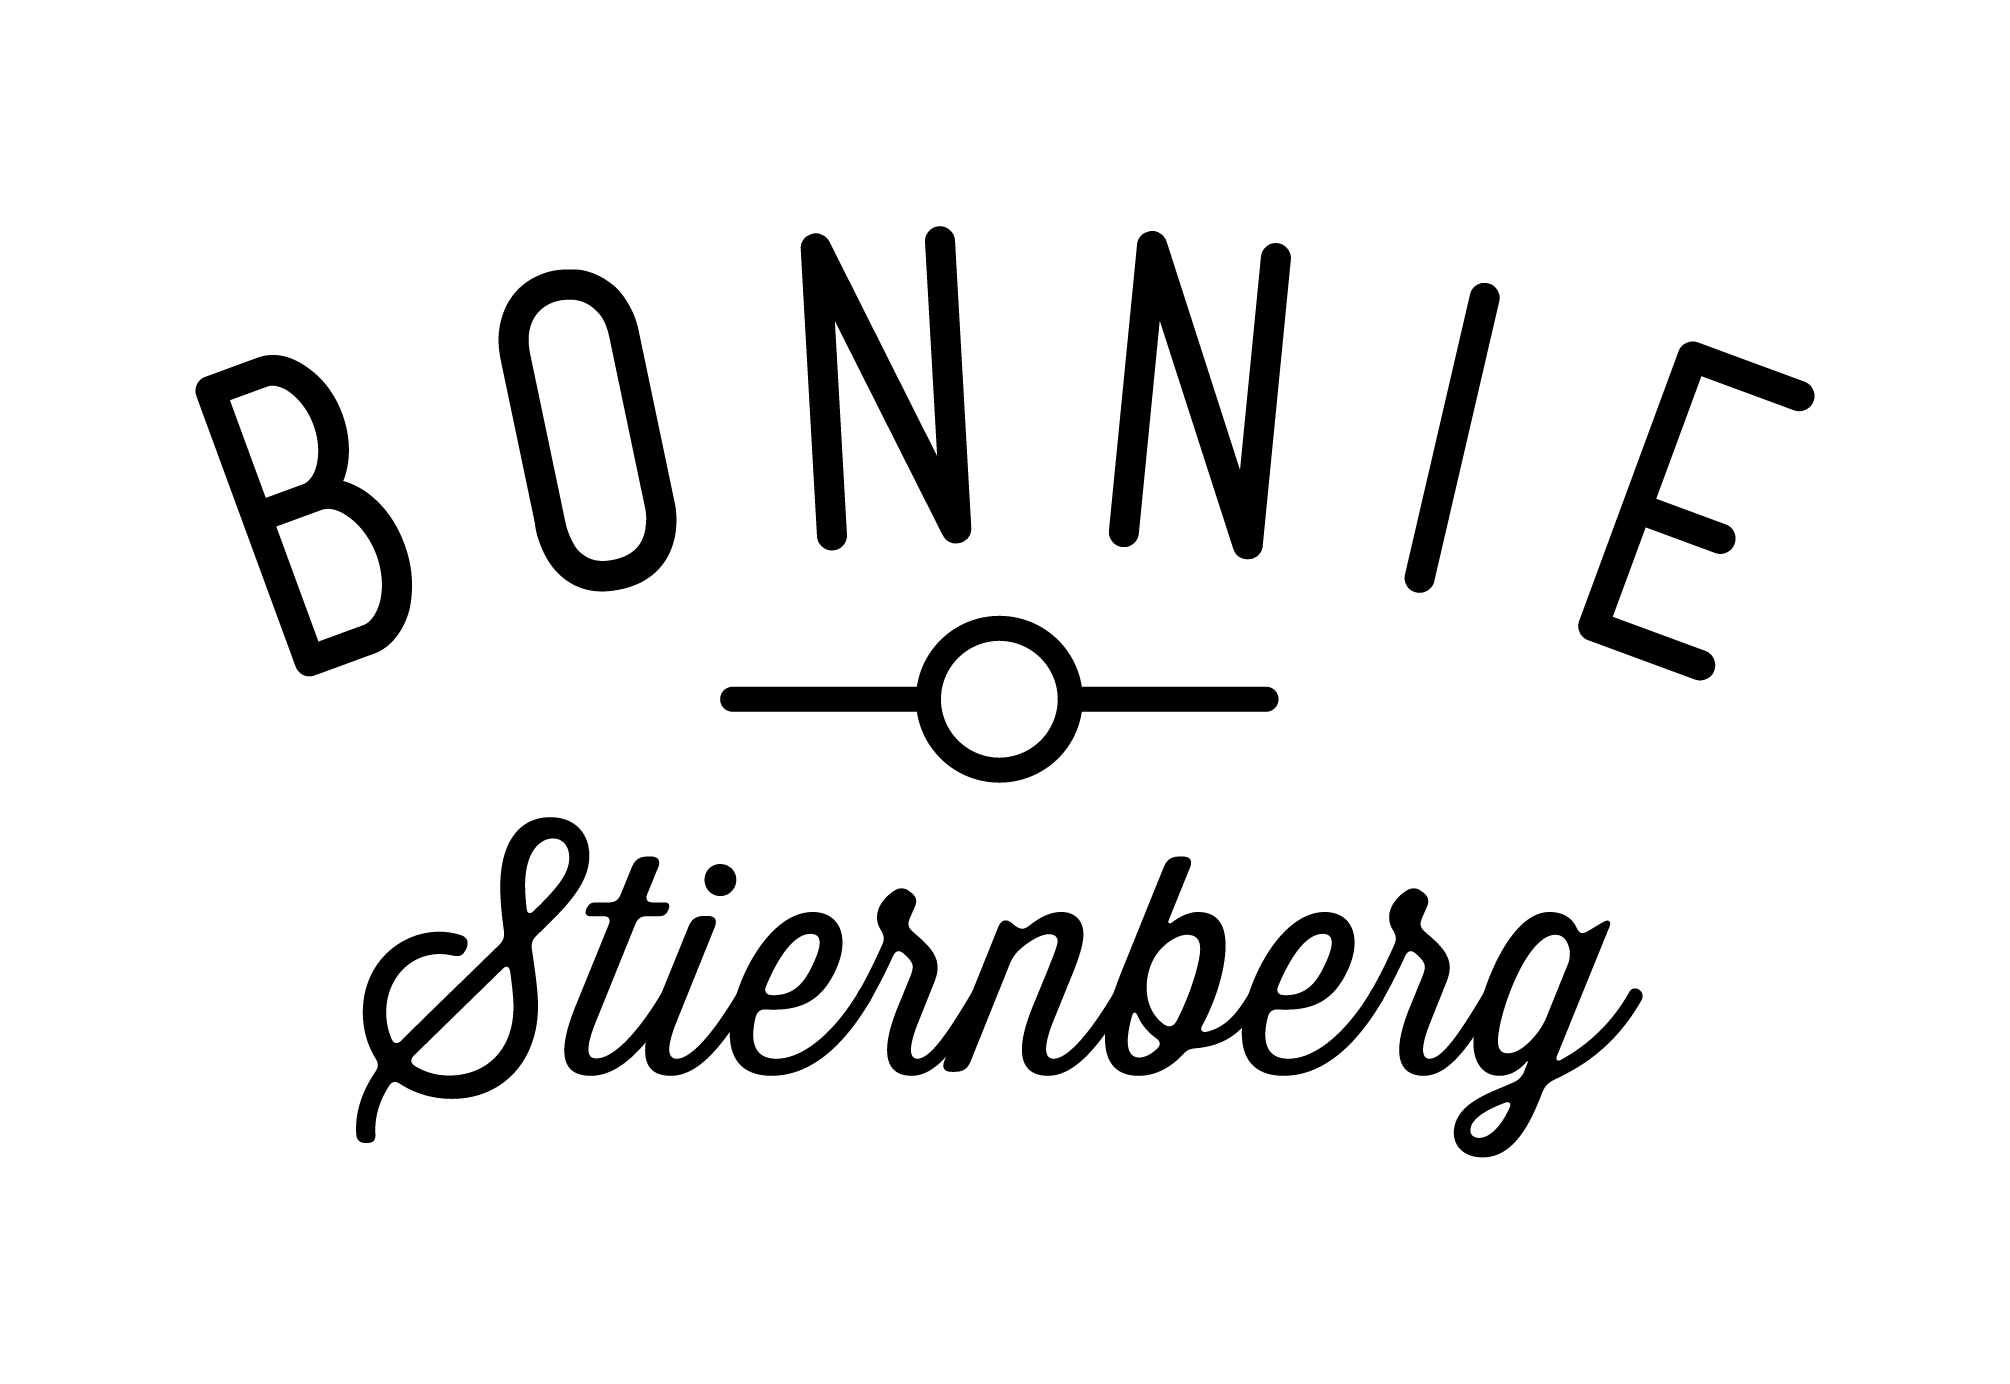 Bonnie Stiernberg